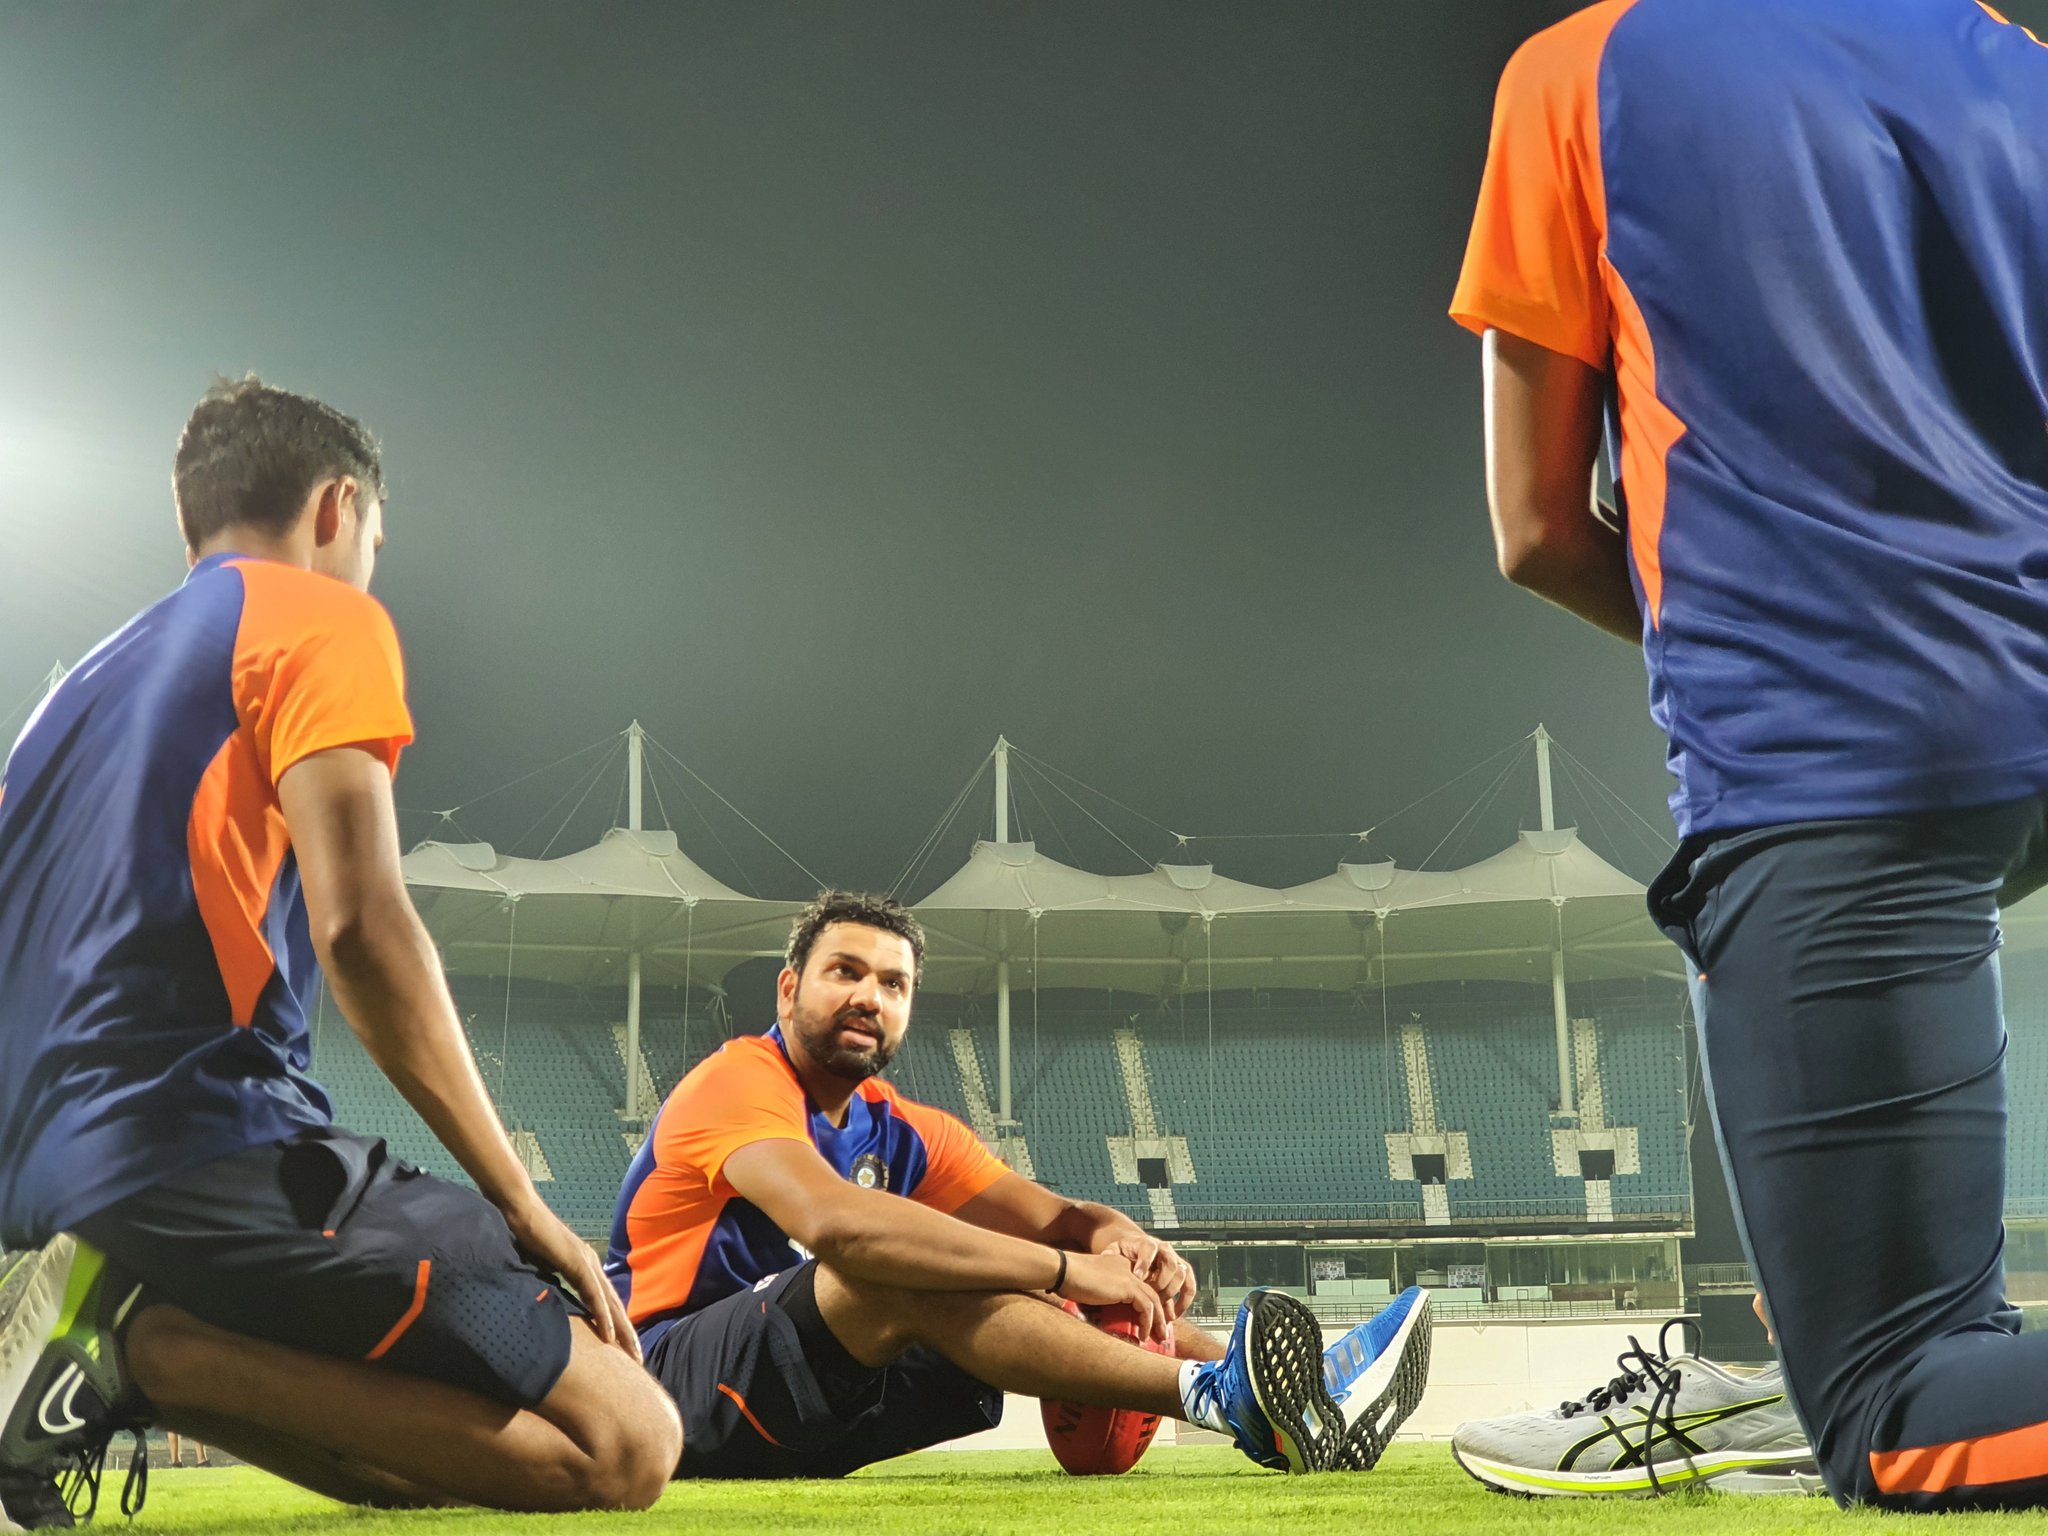 भारतीय संघ जवळपास वर्षभराने घरच्या मैदानावर आंतरराष्ट्रीय क्रिकेट खेळणार आहे. इंग्लंडचा संघ ५ फेब्रुवारीपासून भारताविरूद्ध कसोटी मालिका खेळणार आहे.